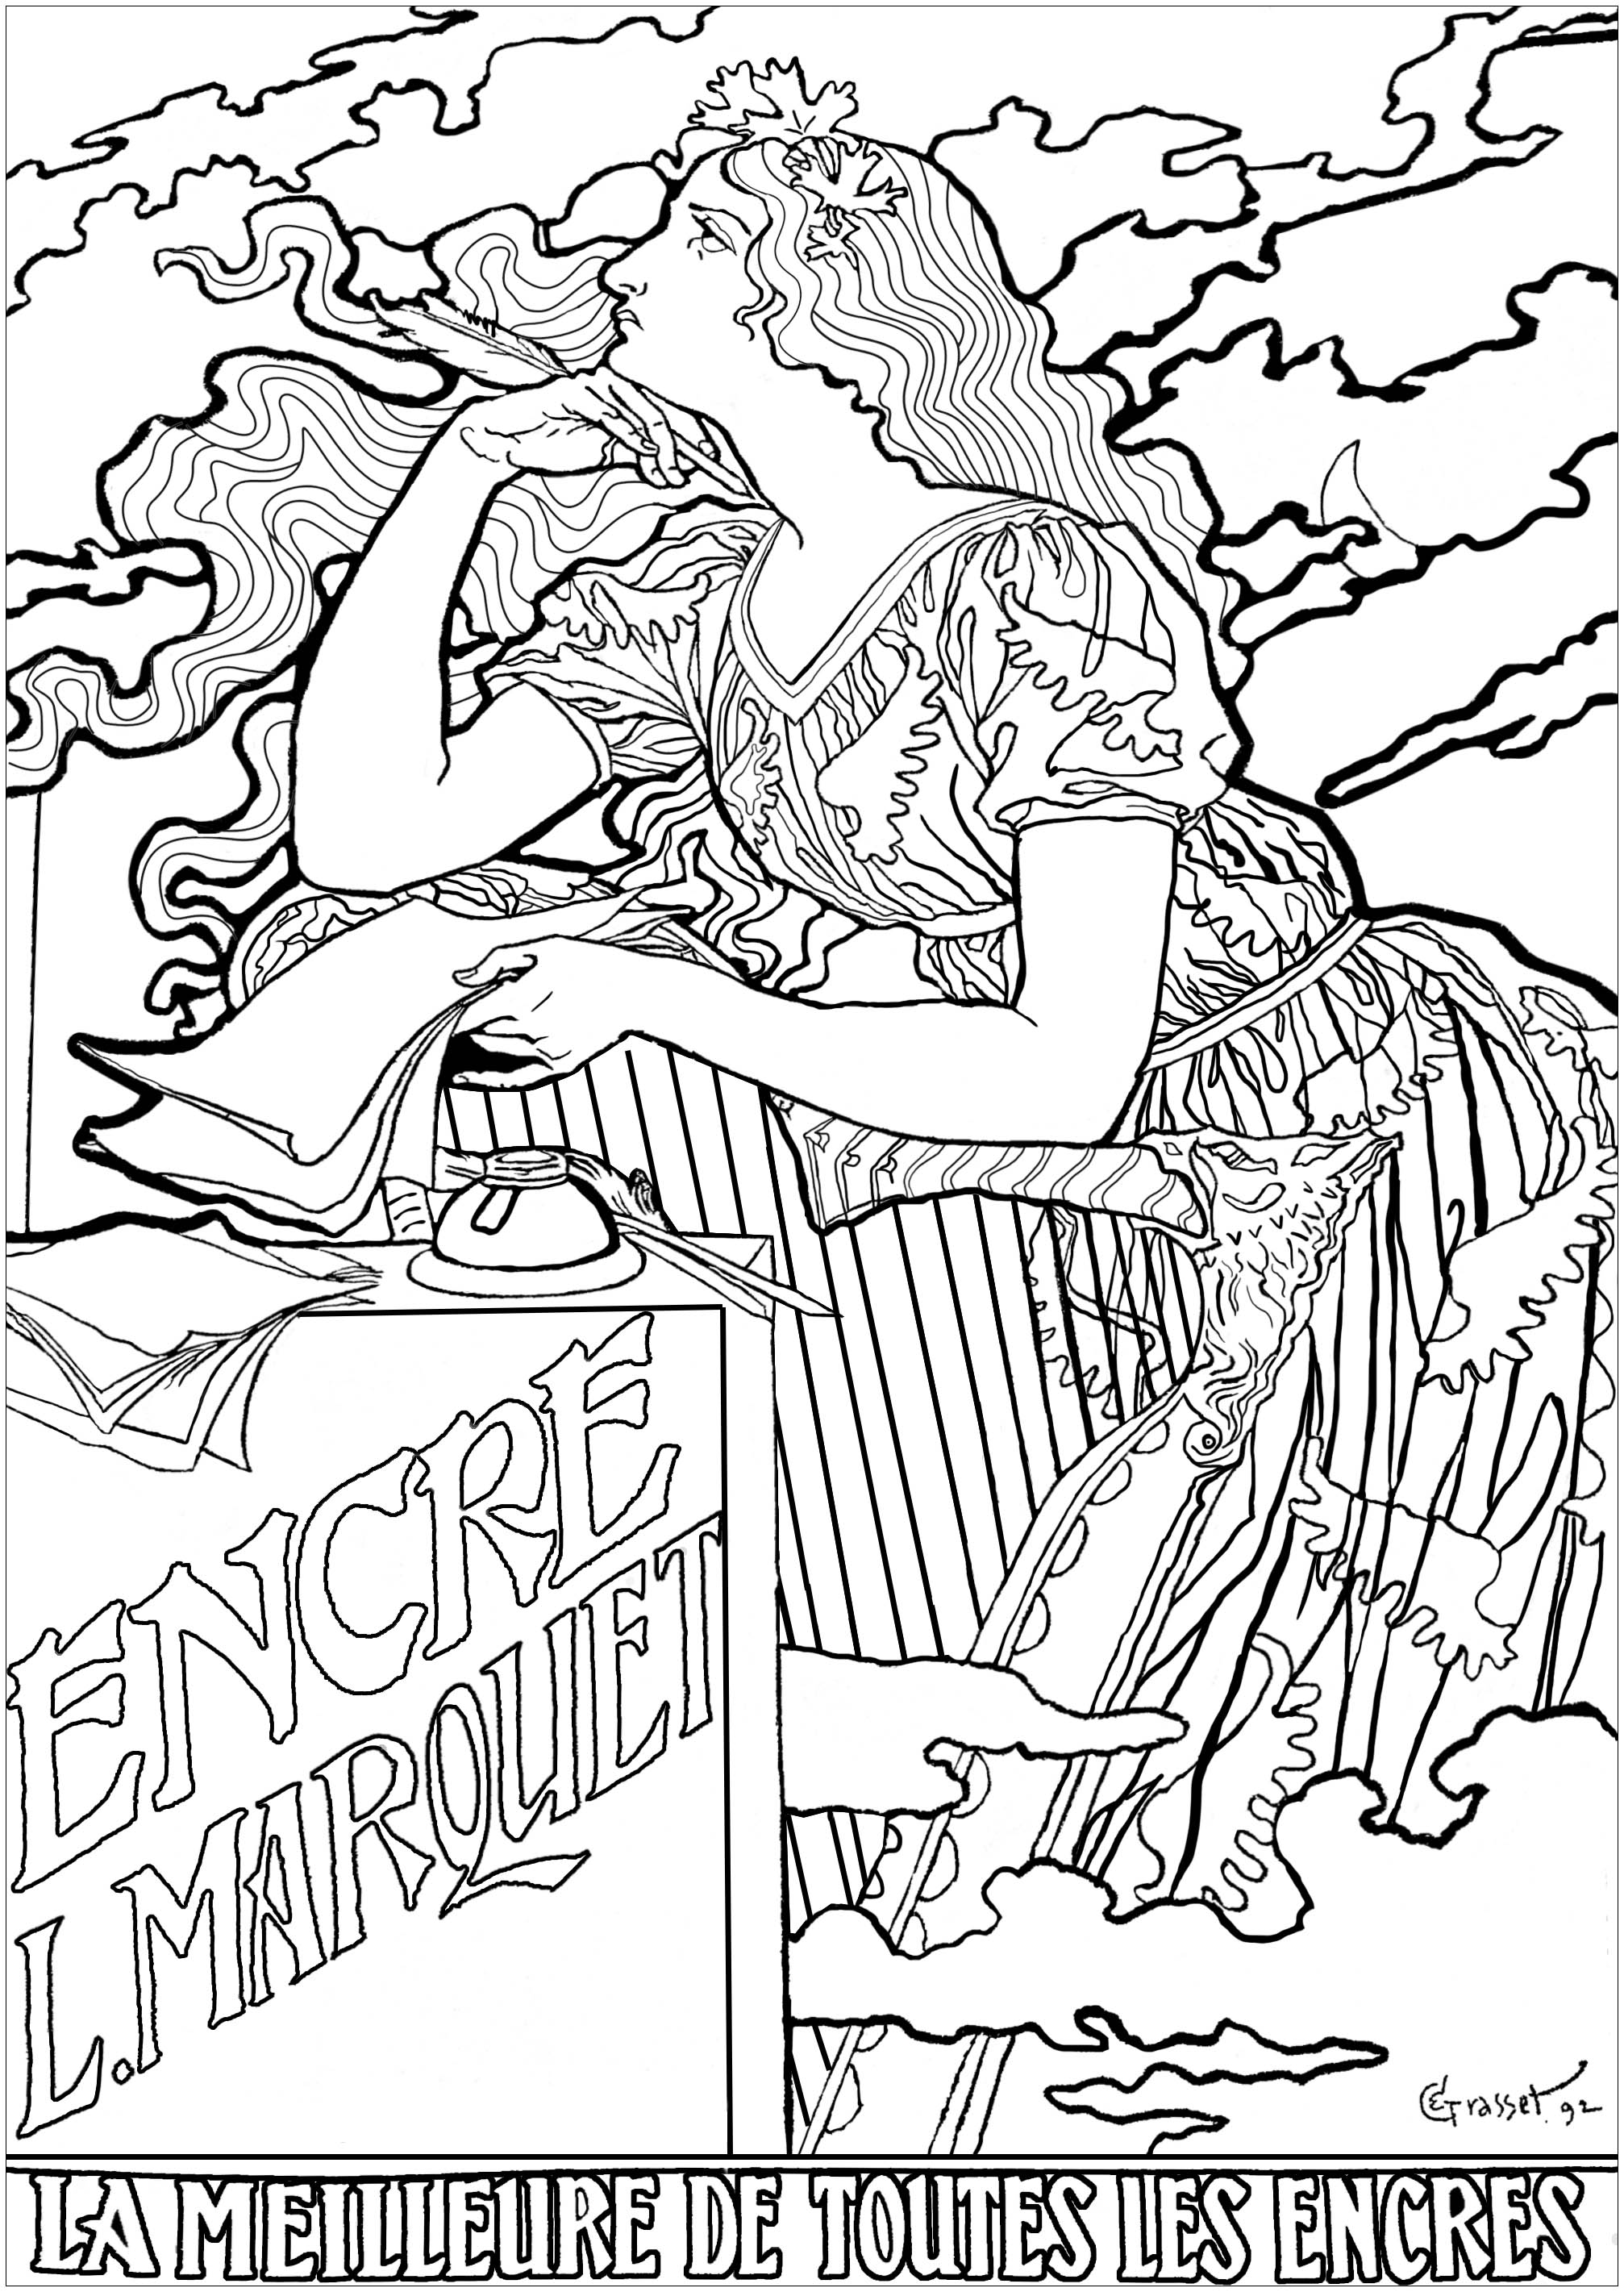 Eugène Grasset: Cartaz para as tintas L. Marquet. Esta página para colorir é baseada num cartaz publicitário de 1892, criado por Eugène Grasset para uma marca de tinta e muito representativo do estilo Arte Nova.